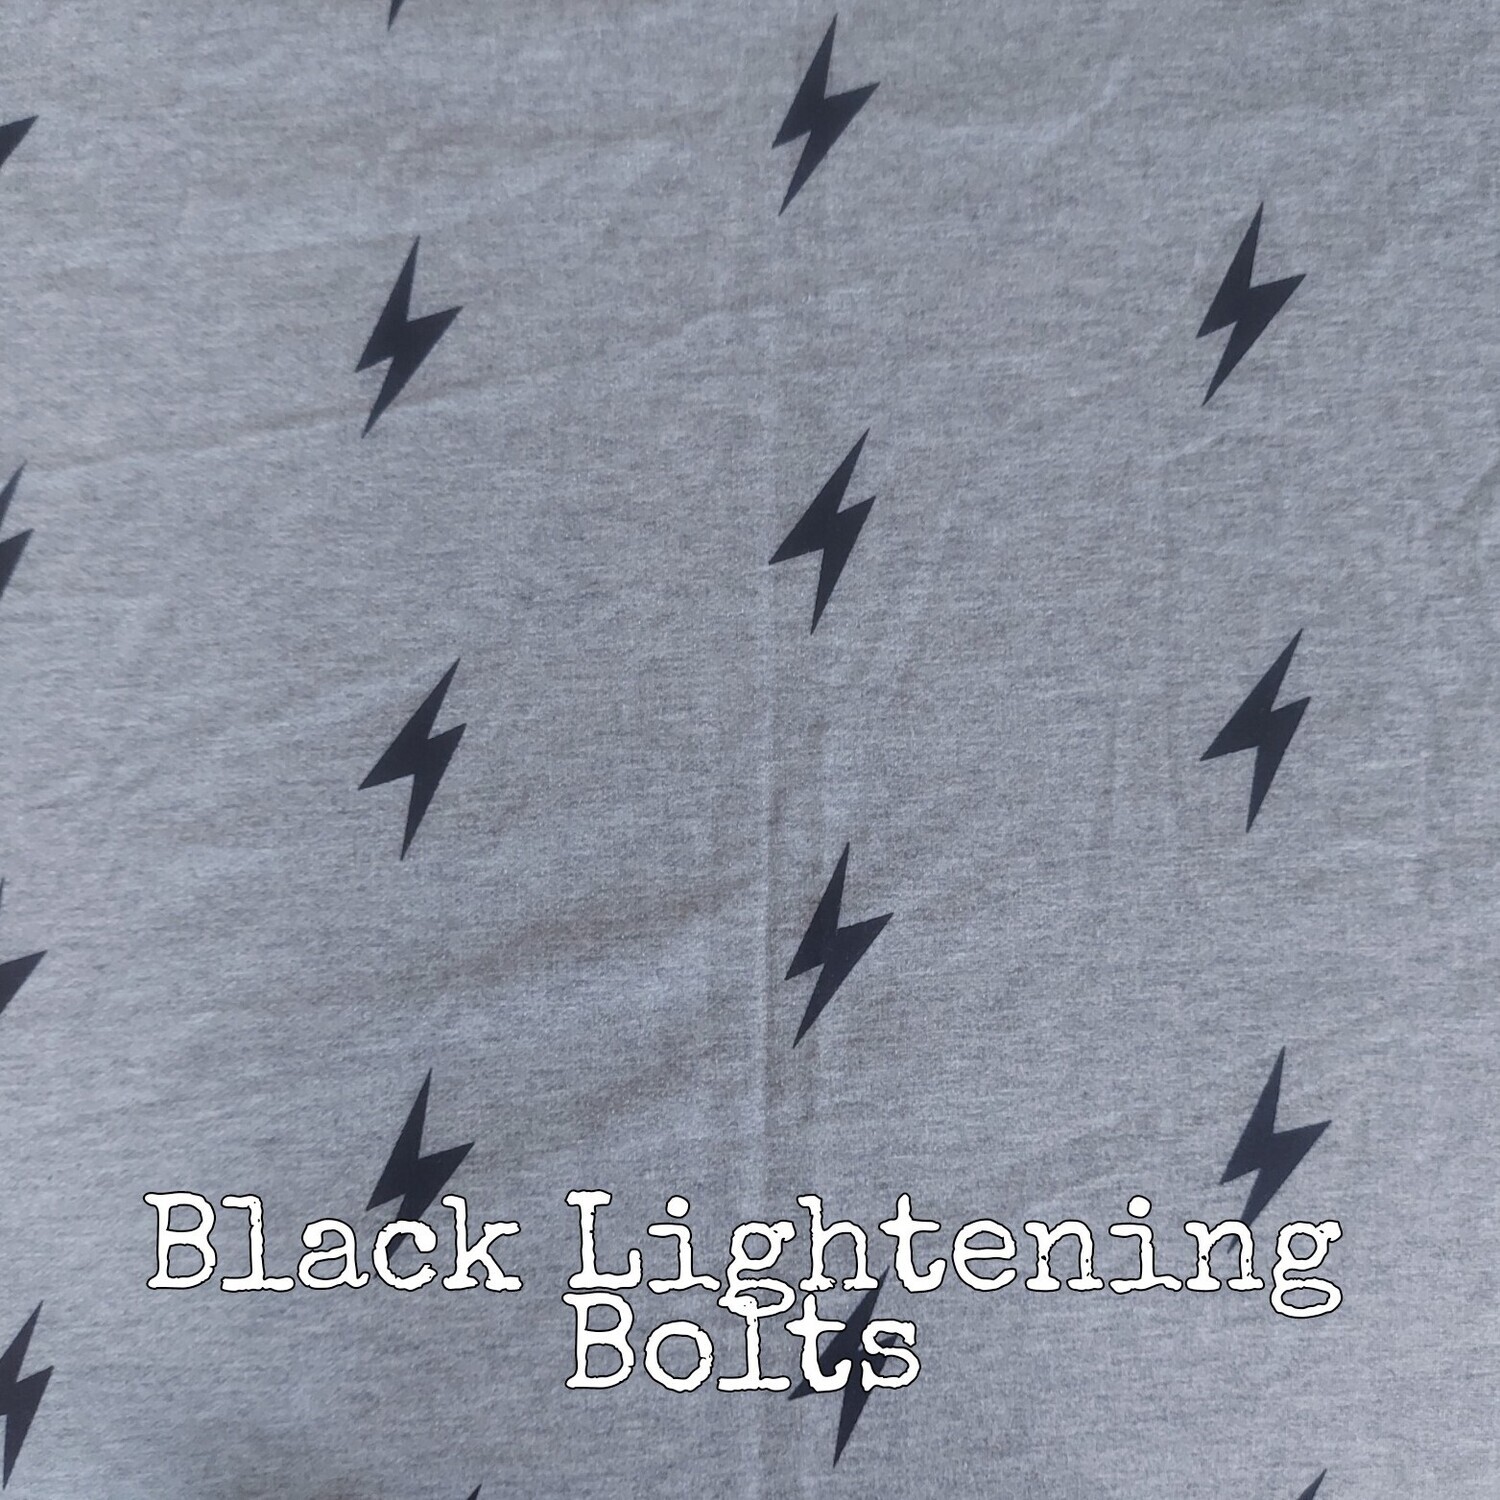 Black Lightning Bolts